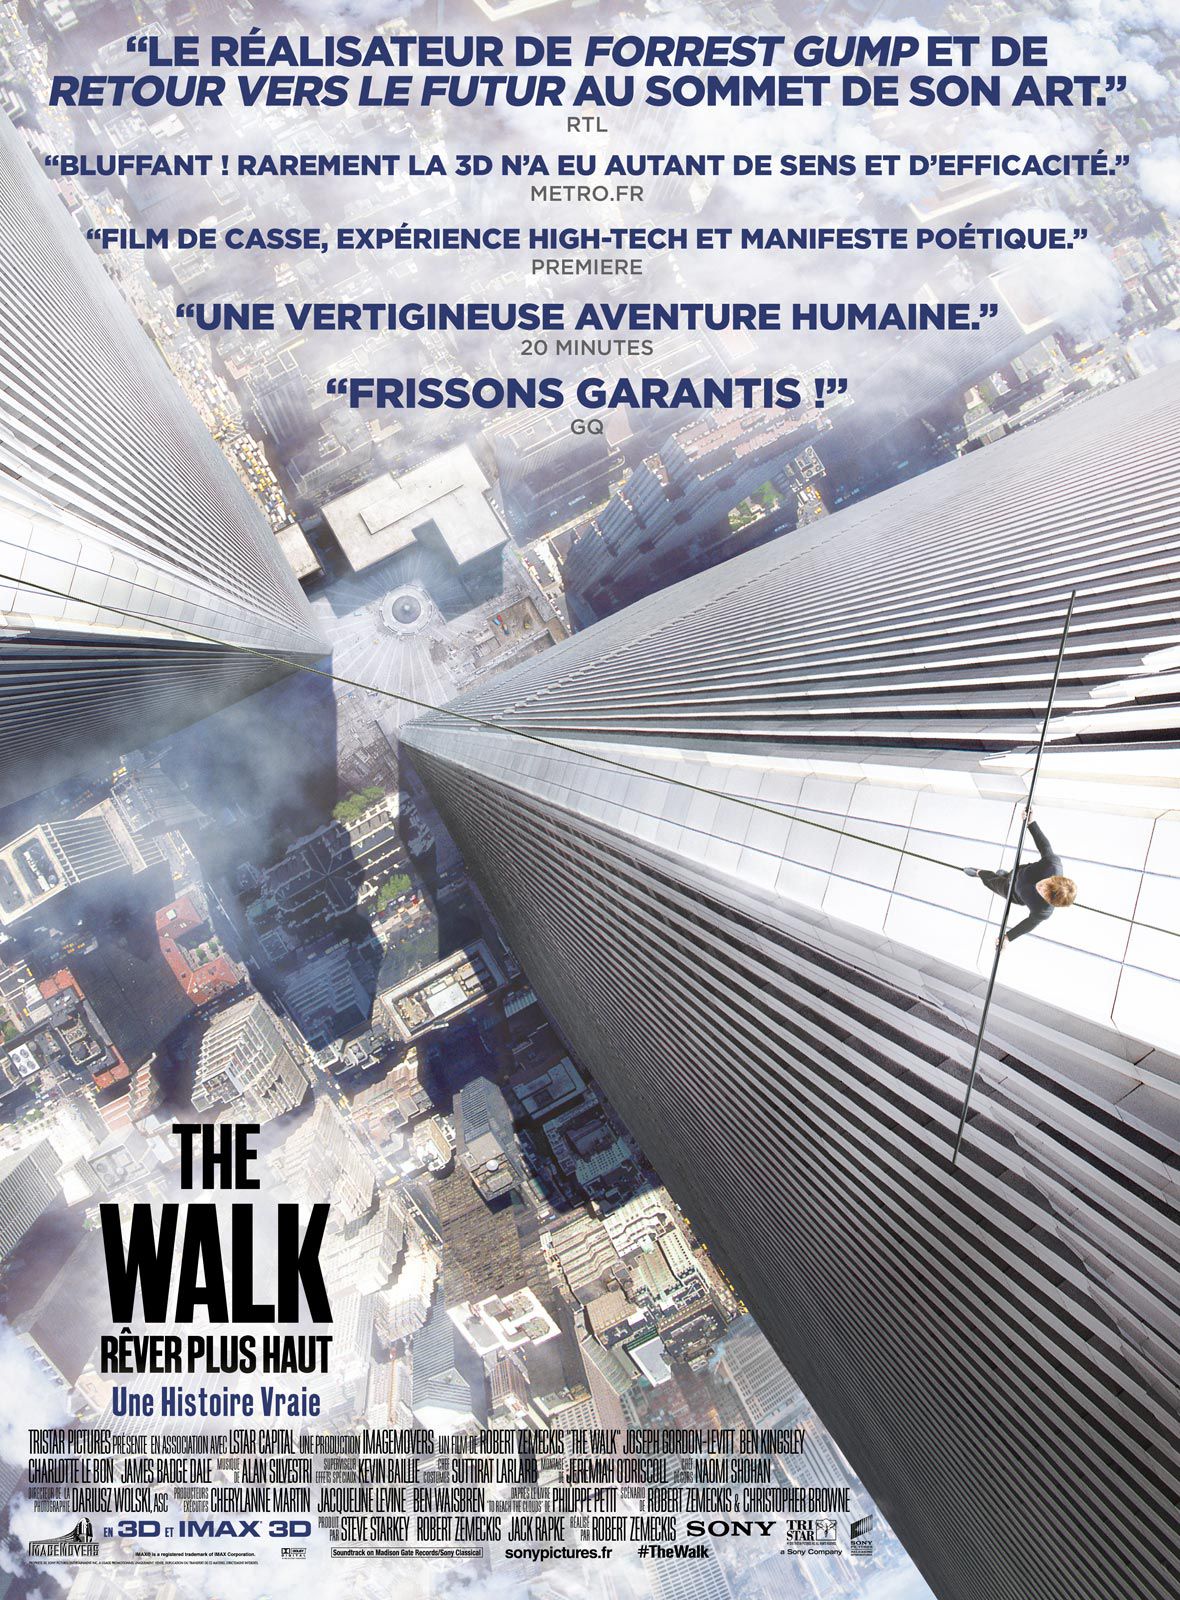 The Walk - Rêver plus haut - Film (2015)